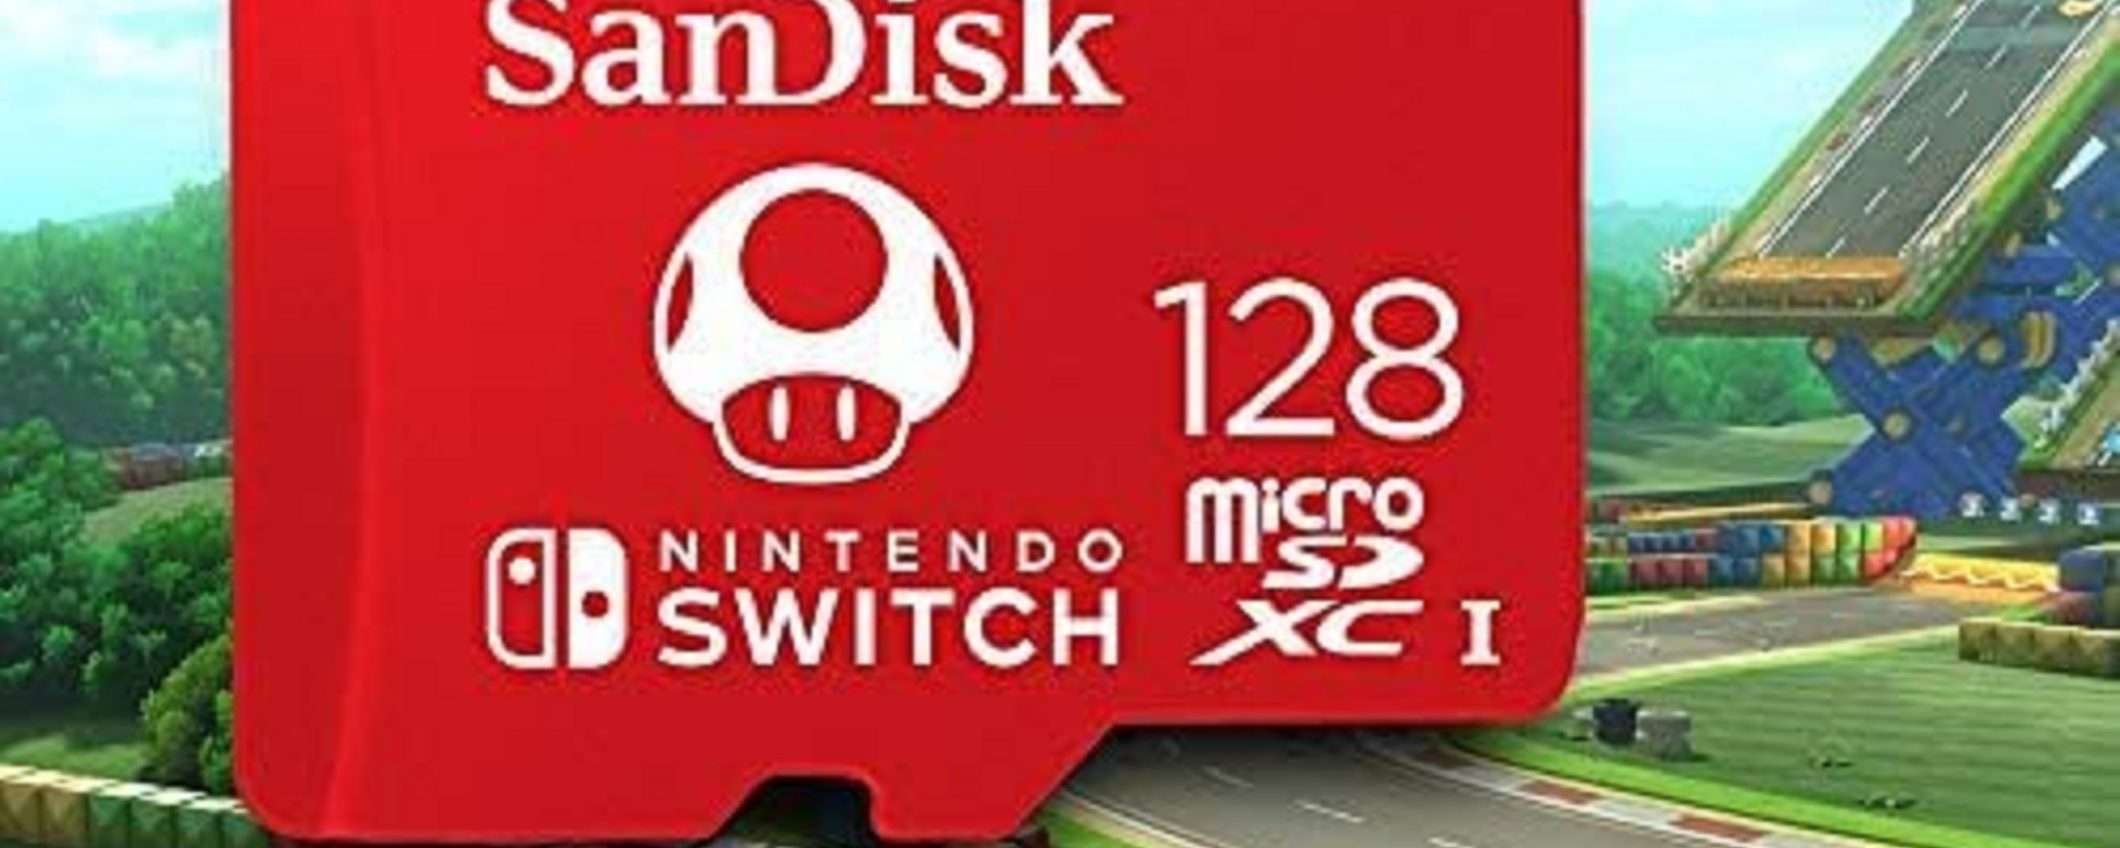 MicroSD SanDisk per Nintendo Switch da 128GB al MINIMO STORICO (solo 17€)